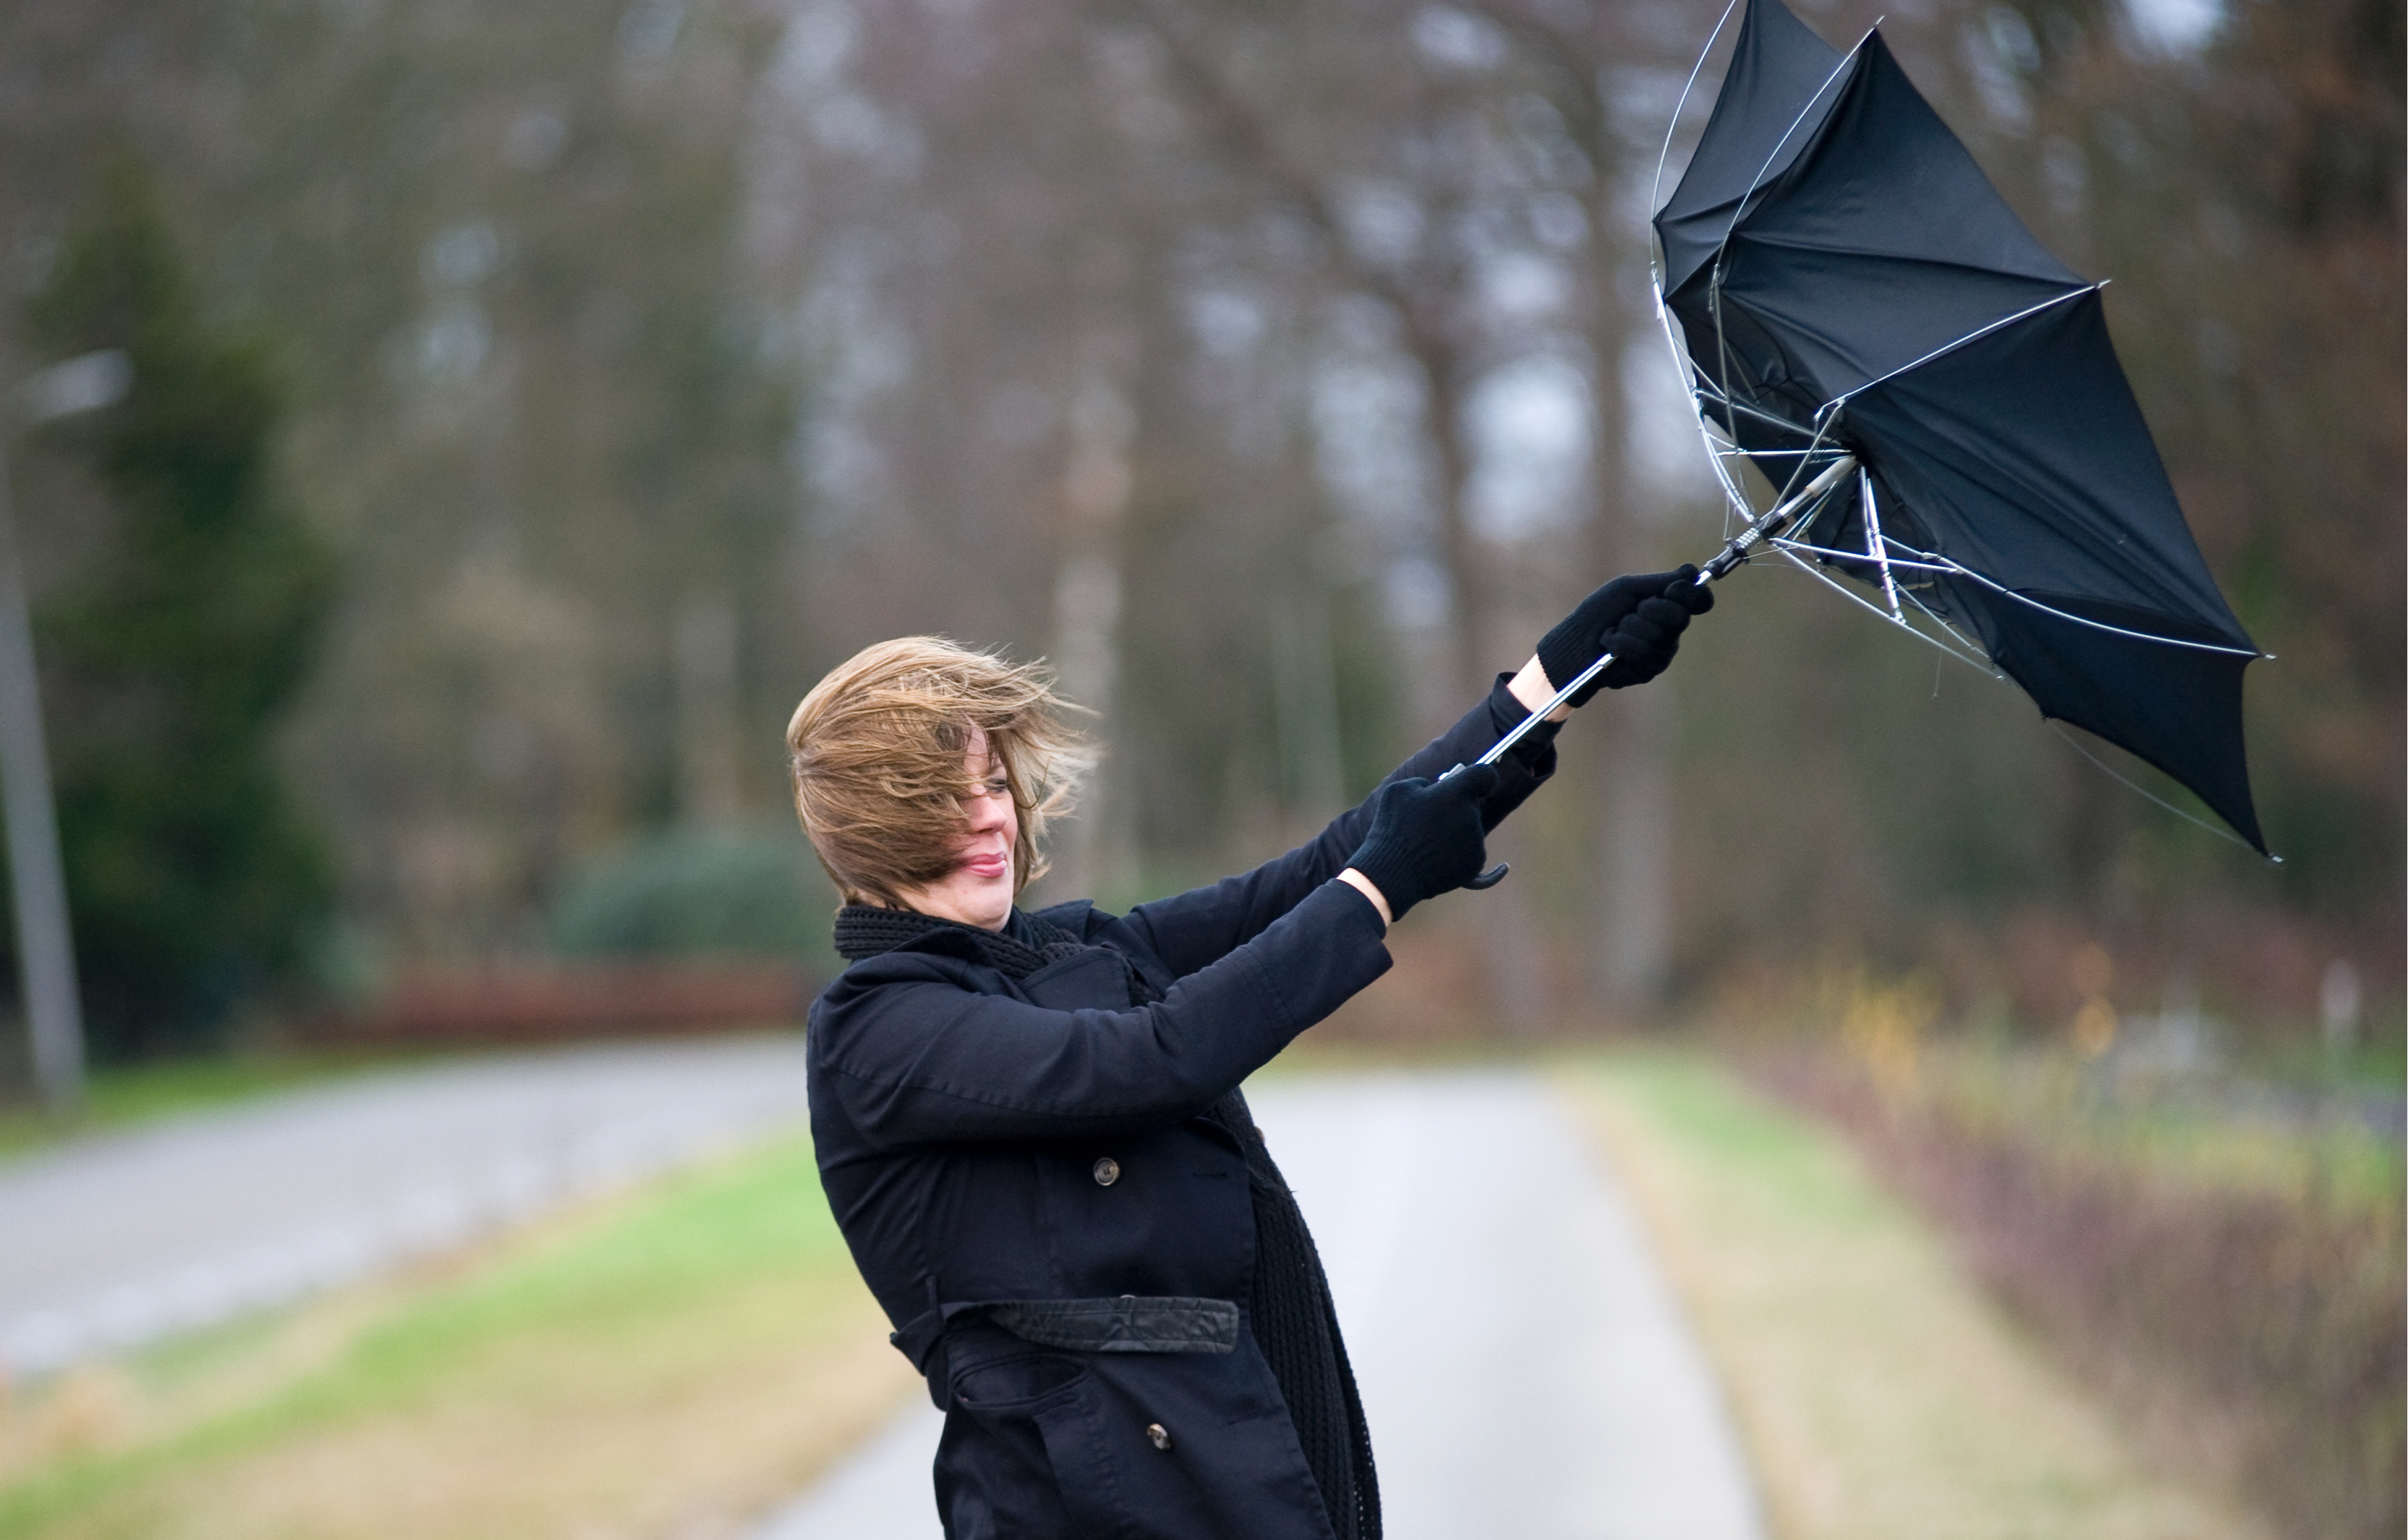 Одолжил ей зонтик. Сильный ветер. Шквалистый ветер. Ветер и зонт. Человек с зонтиком.